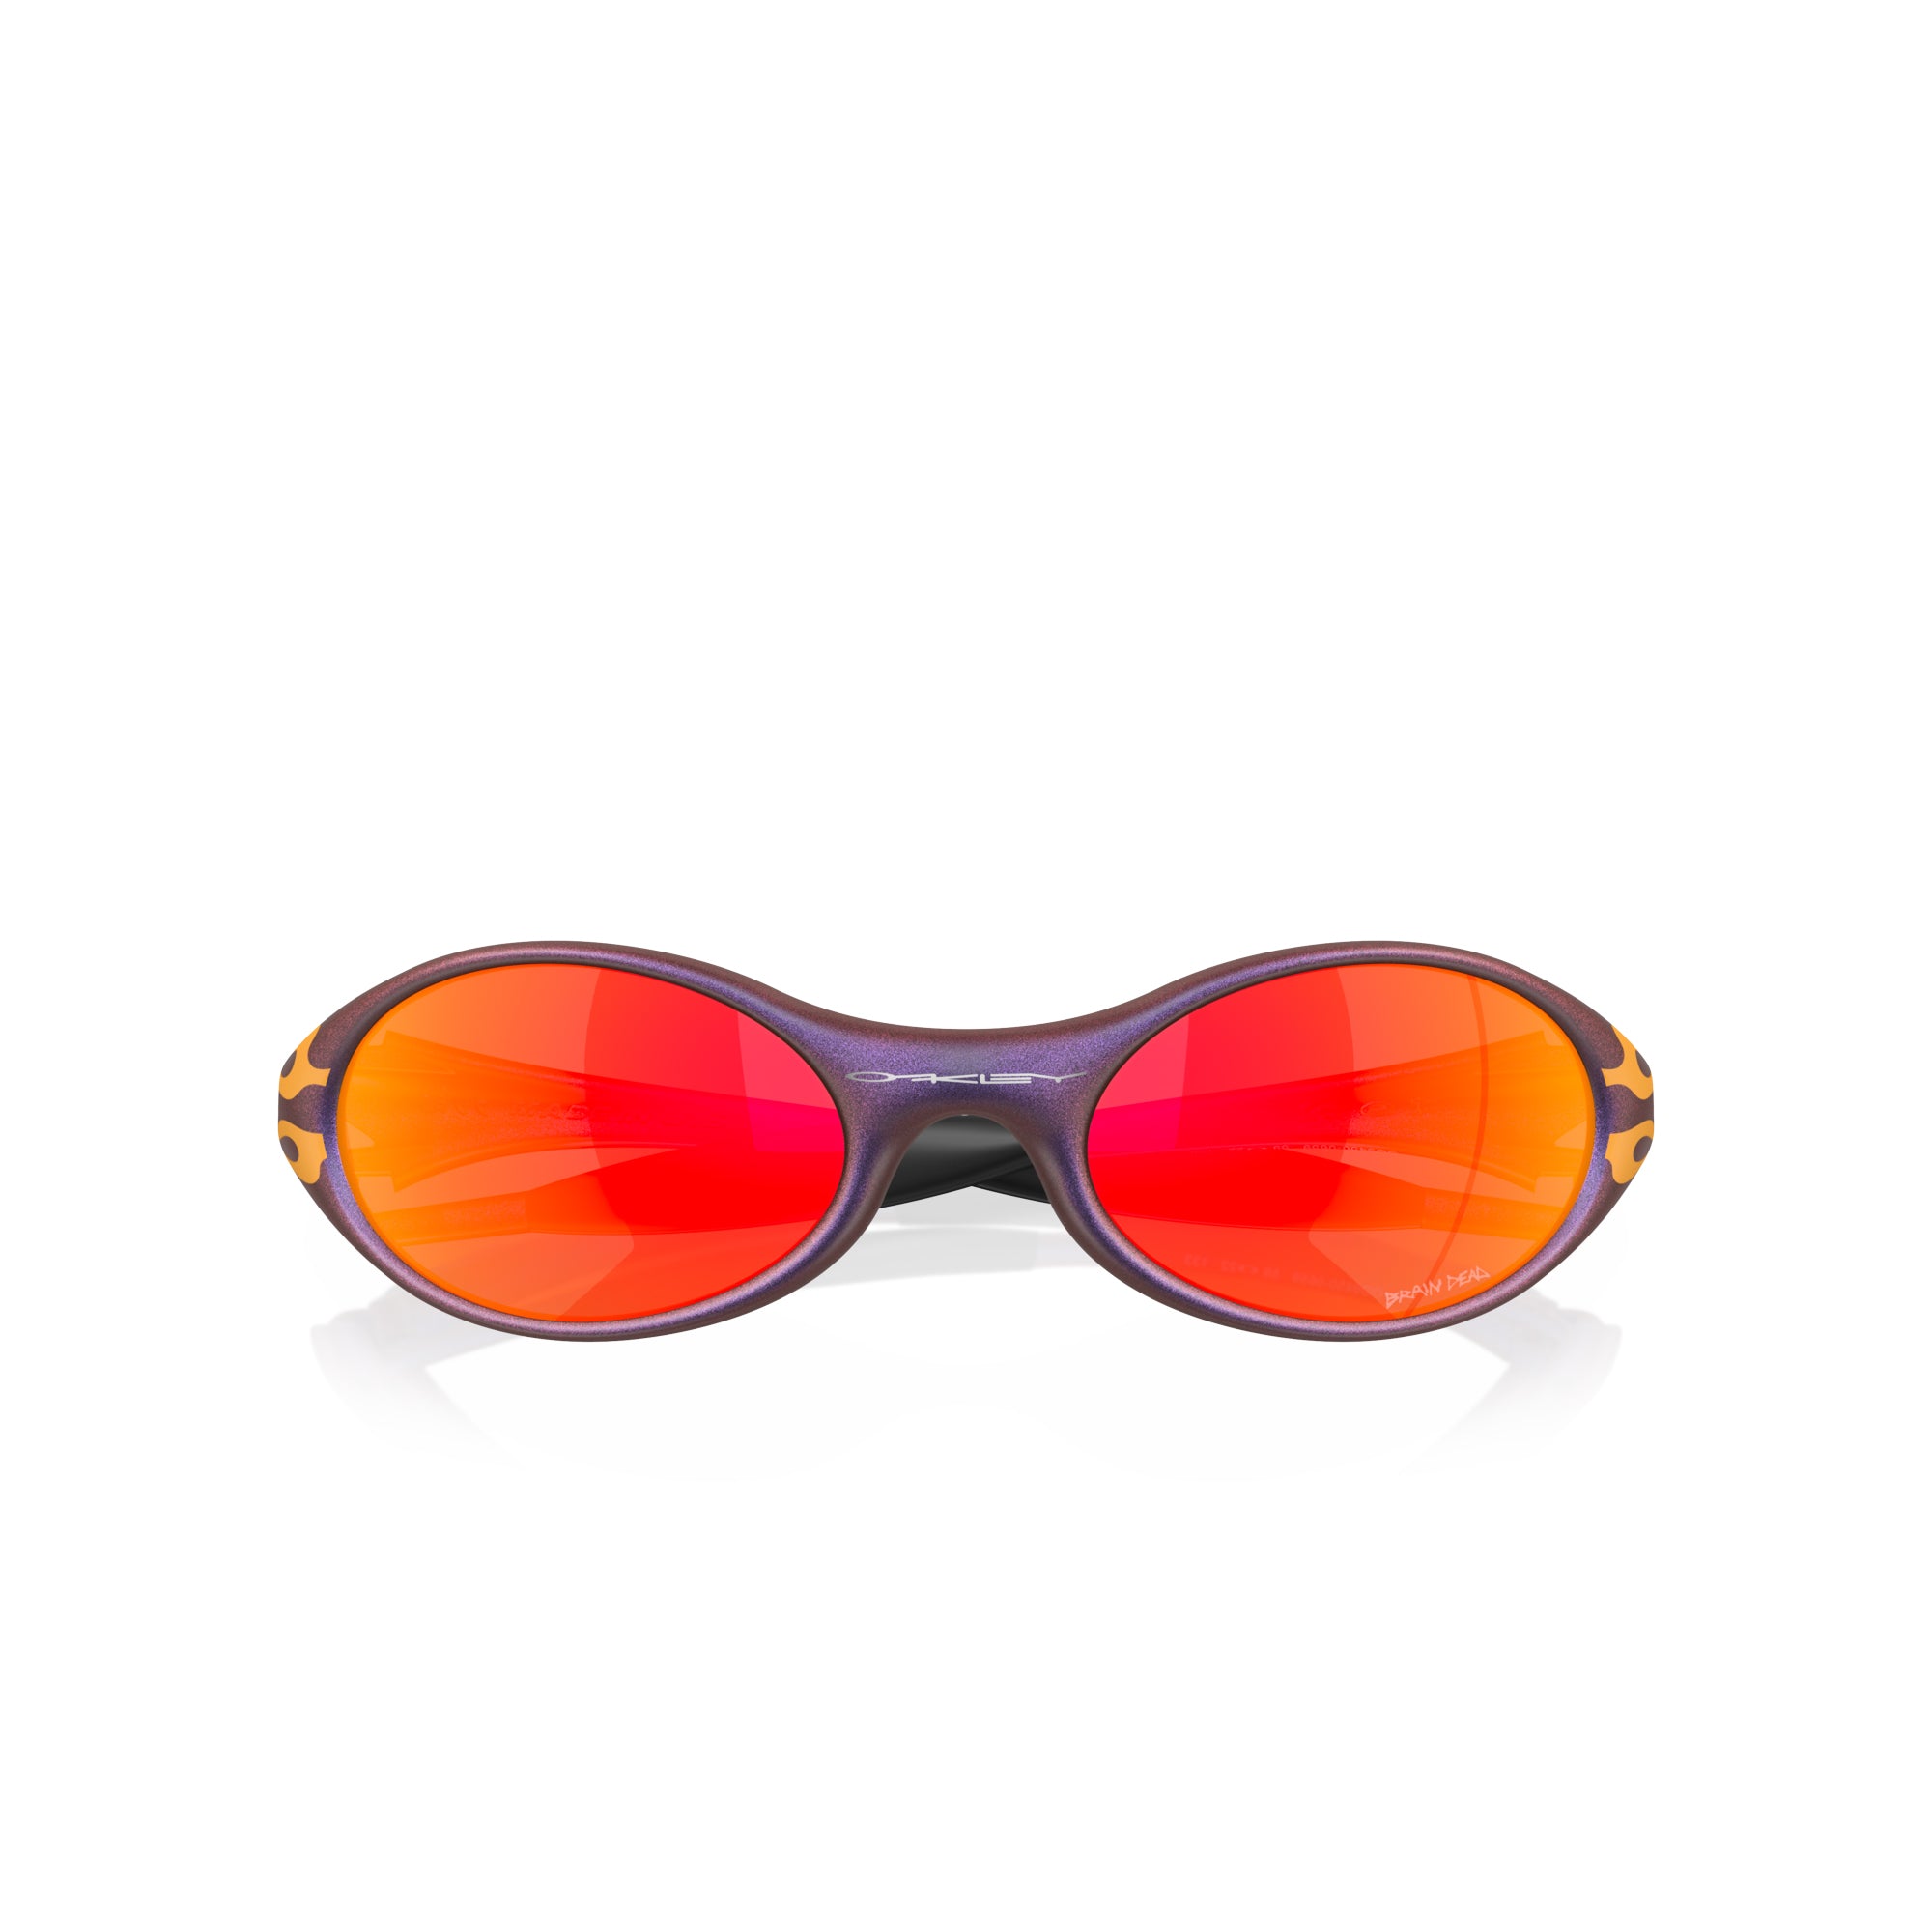 Oakley - Sunglasses, Apparel, & Accessories